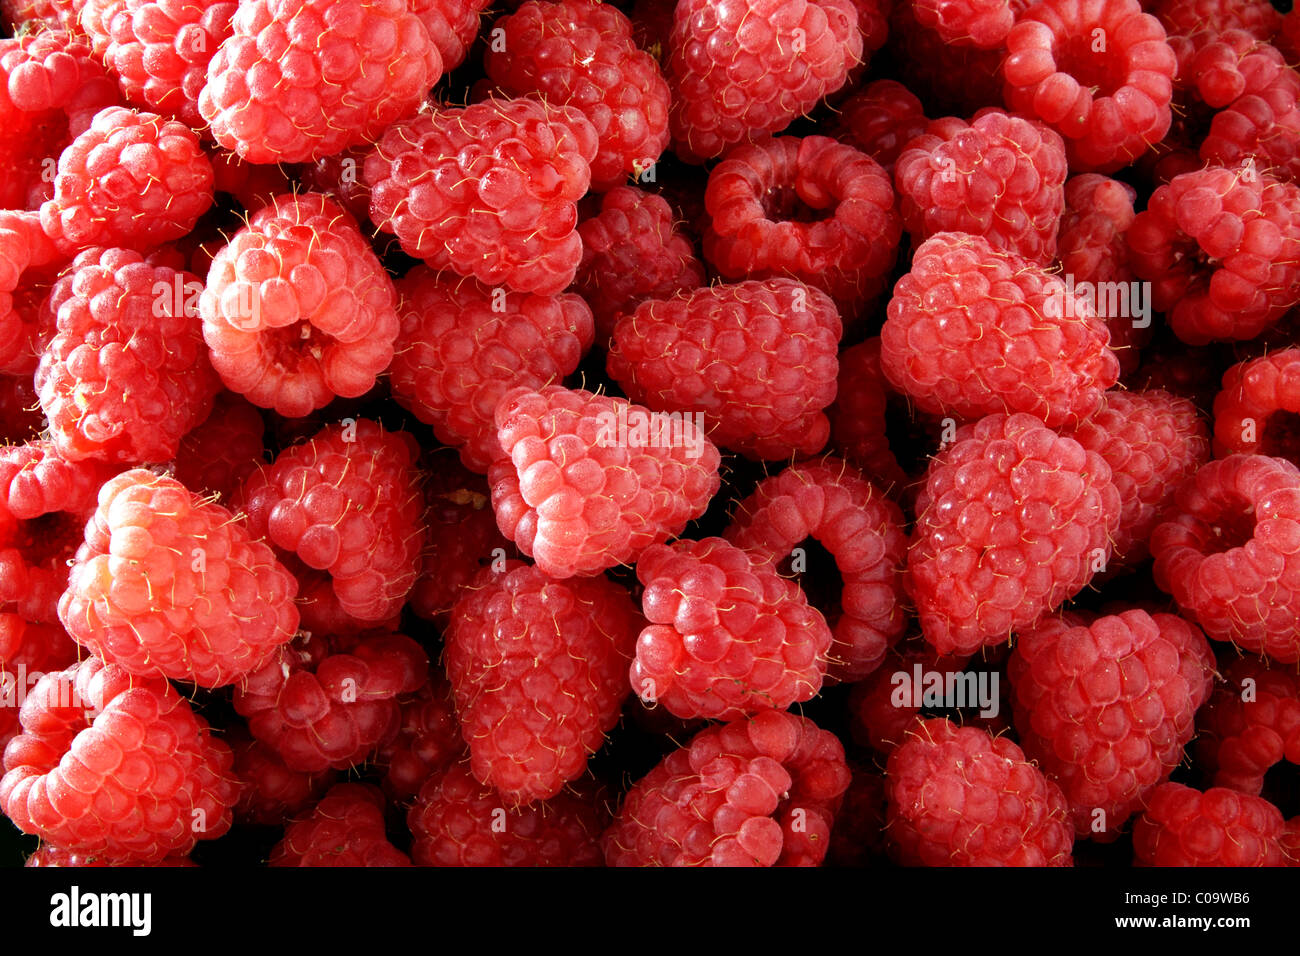 Raspberries (Rubus idaeus) Stock Photo